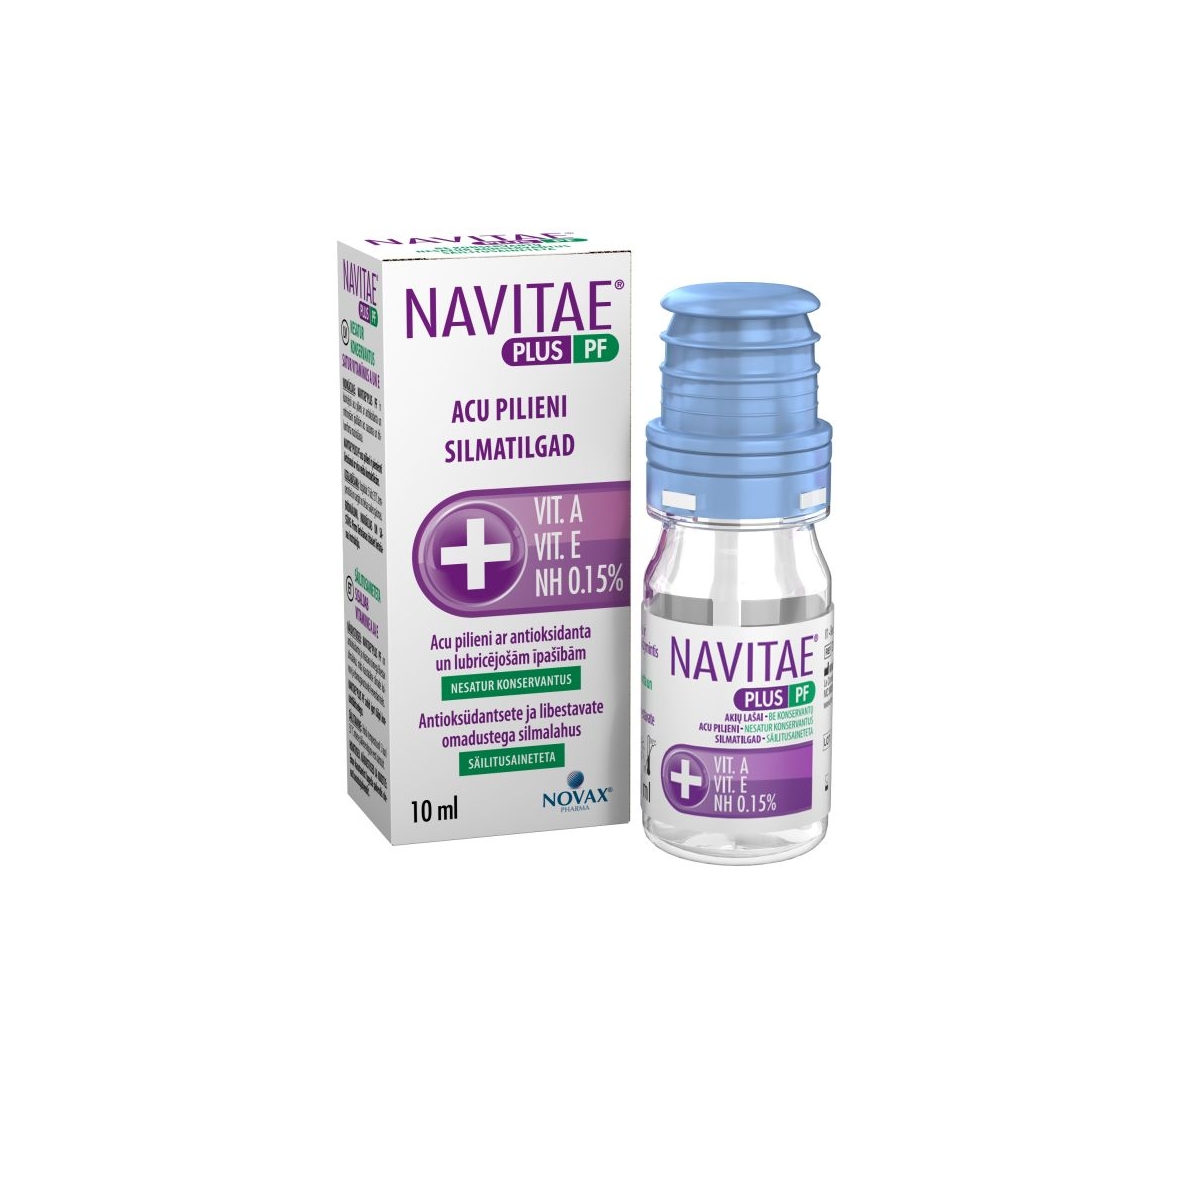 NAVITAE® PLUS PF acu pilieni 10 ml